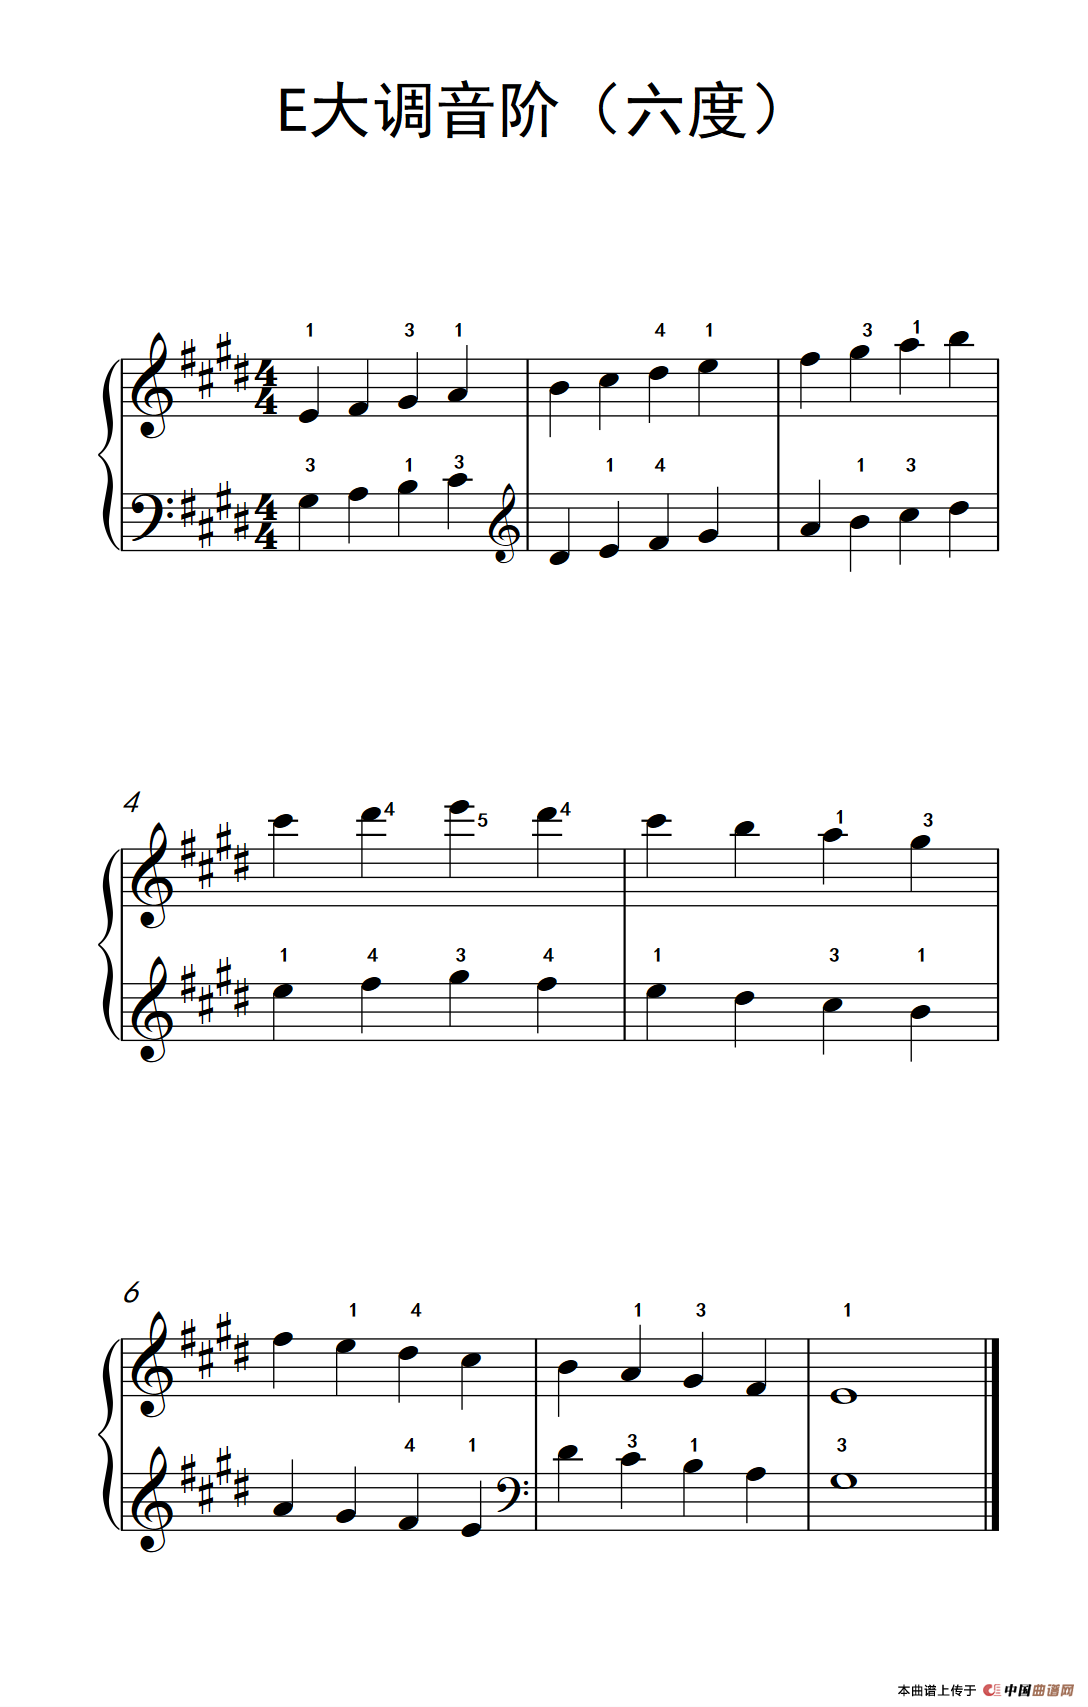 E大调音阶(六度)钢琴谱(孩子们的钢琴音阶